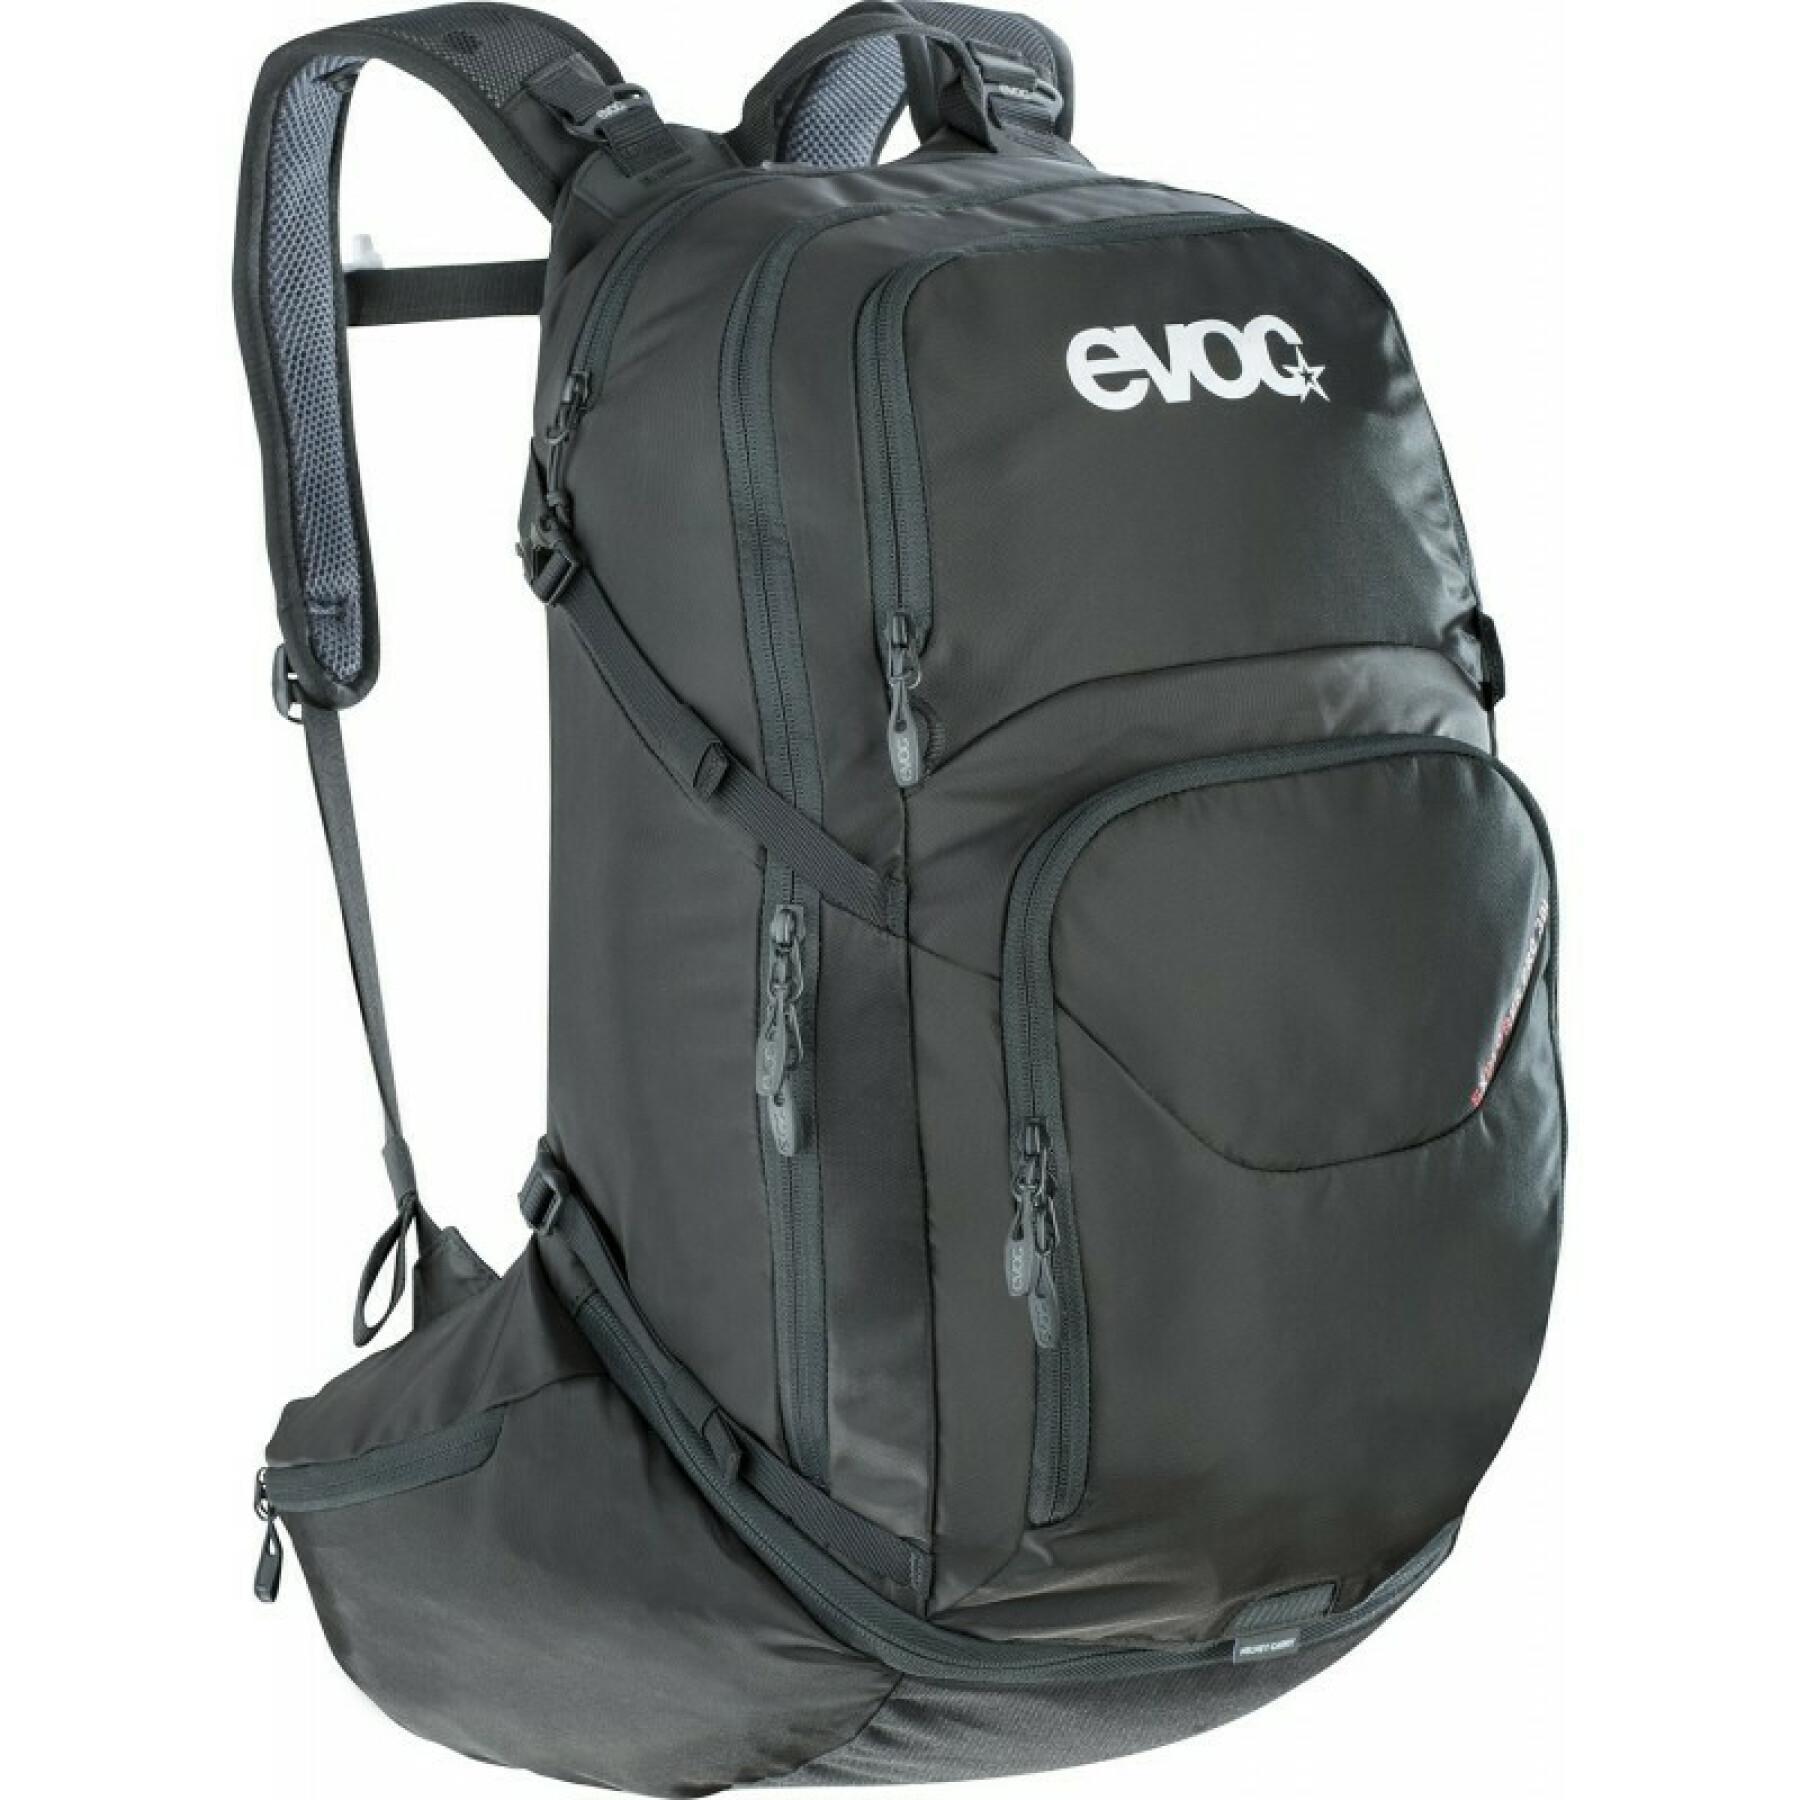 Backpack Evoc explorer pro